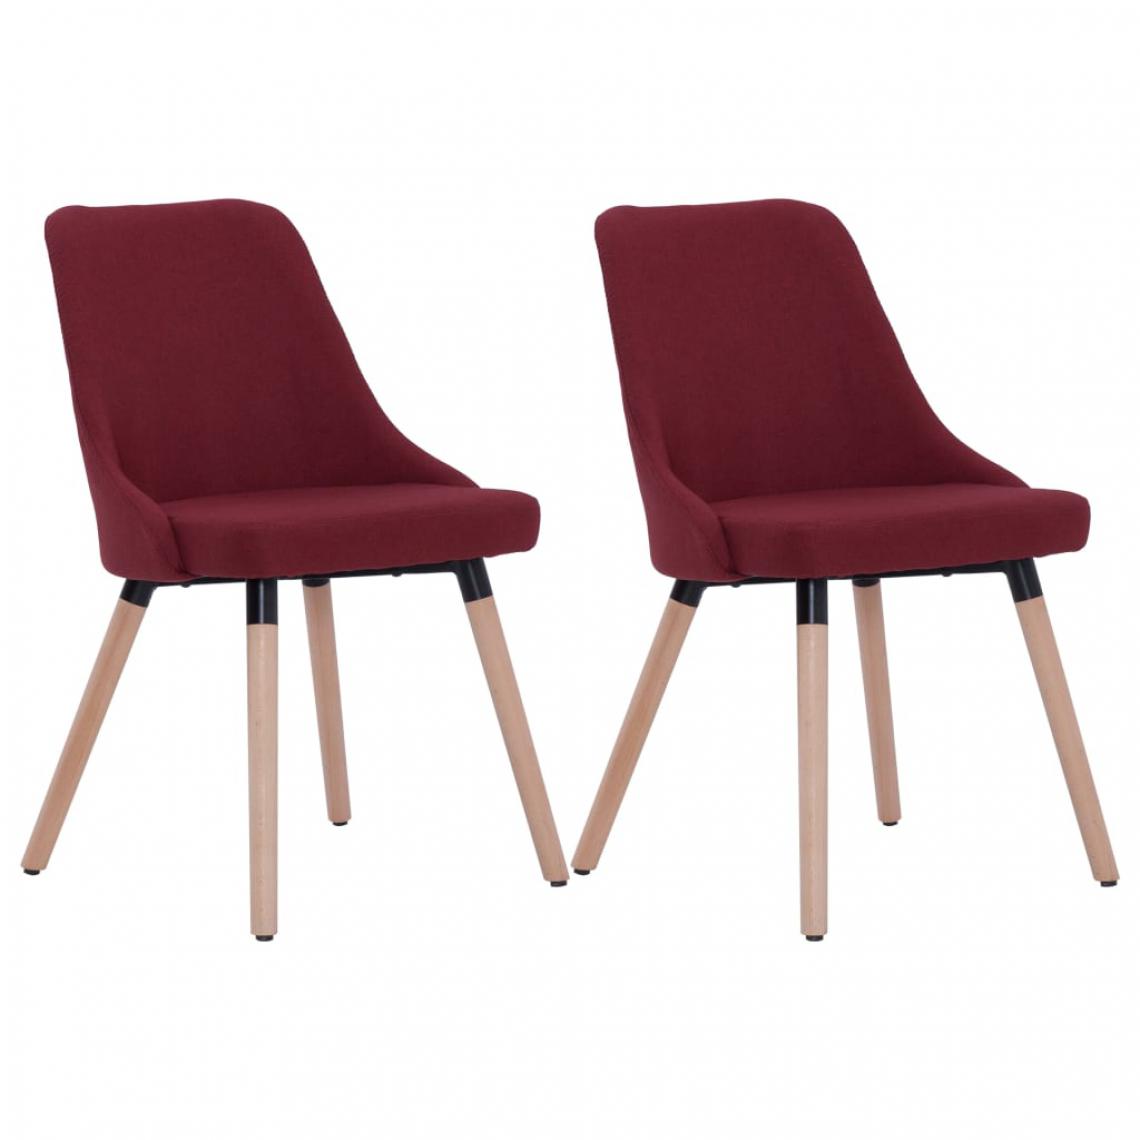 Icaverne - Icaverne - Chaises de cuisine collection Chaises de salle à manger 2 pcs Rouge bordeaux Tissu - Chaises